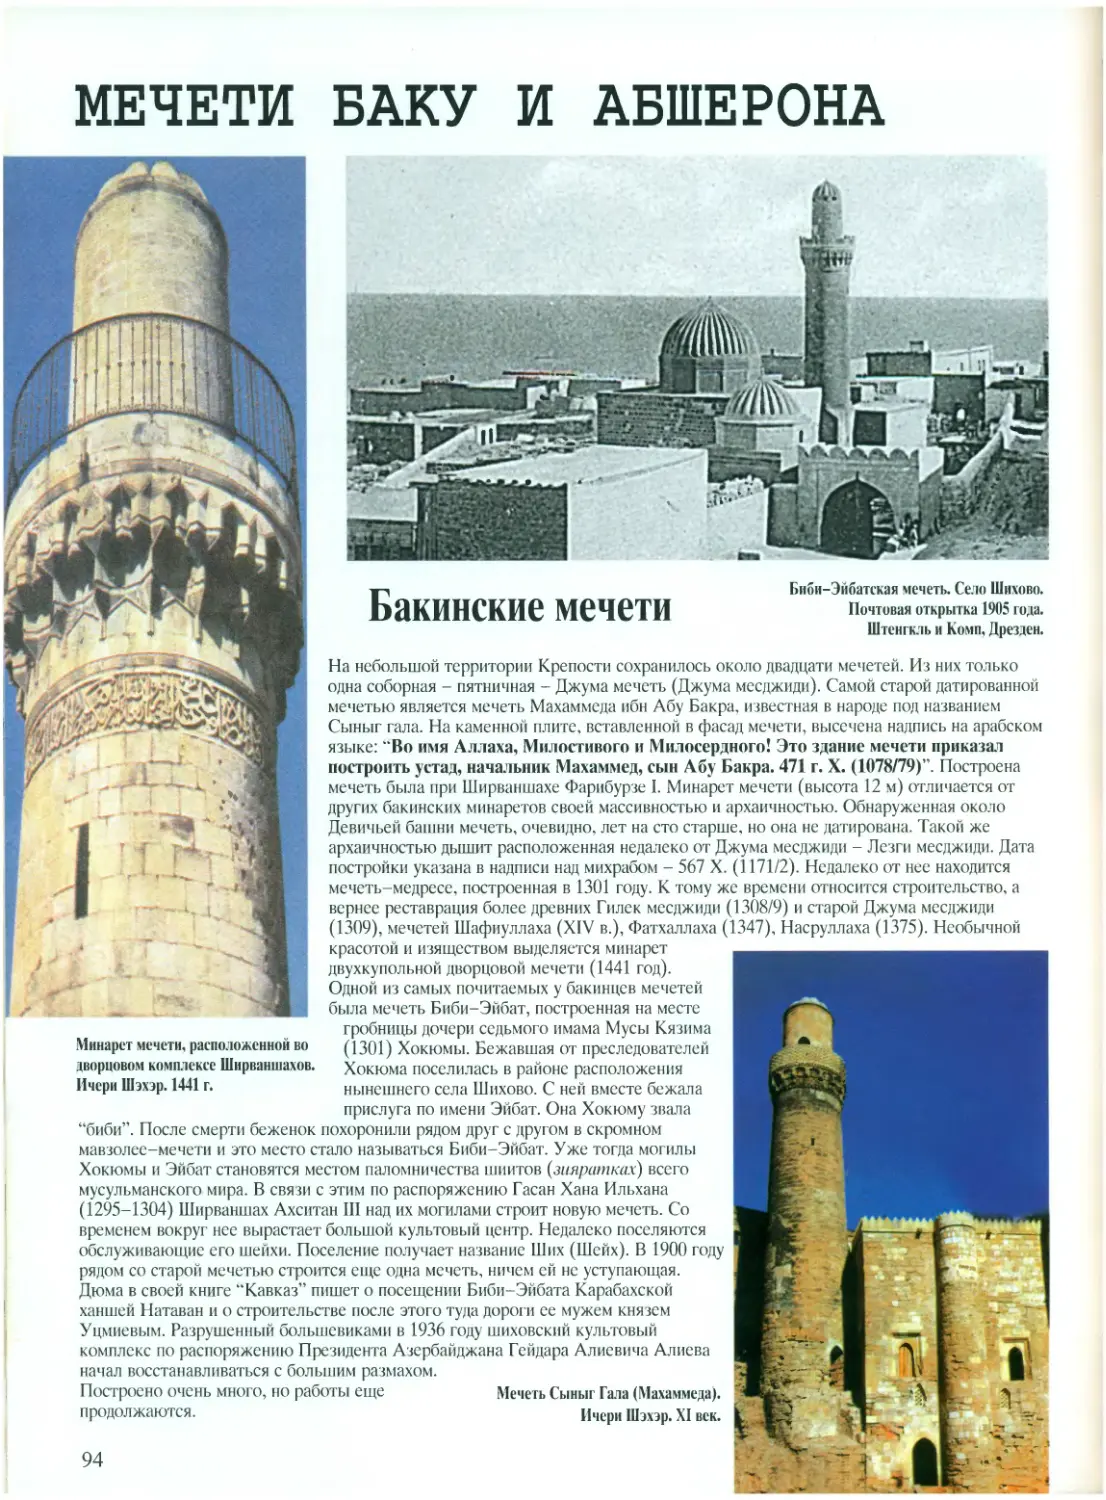 Мечети Баку и Абшерона